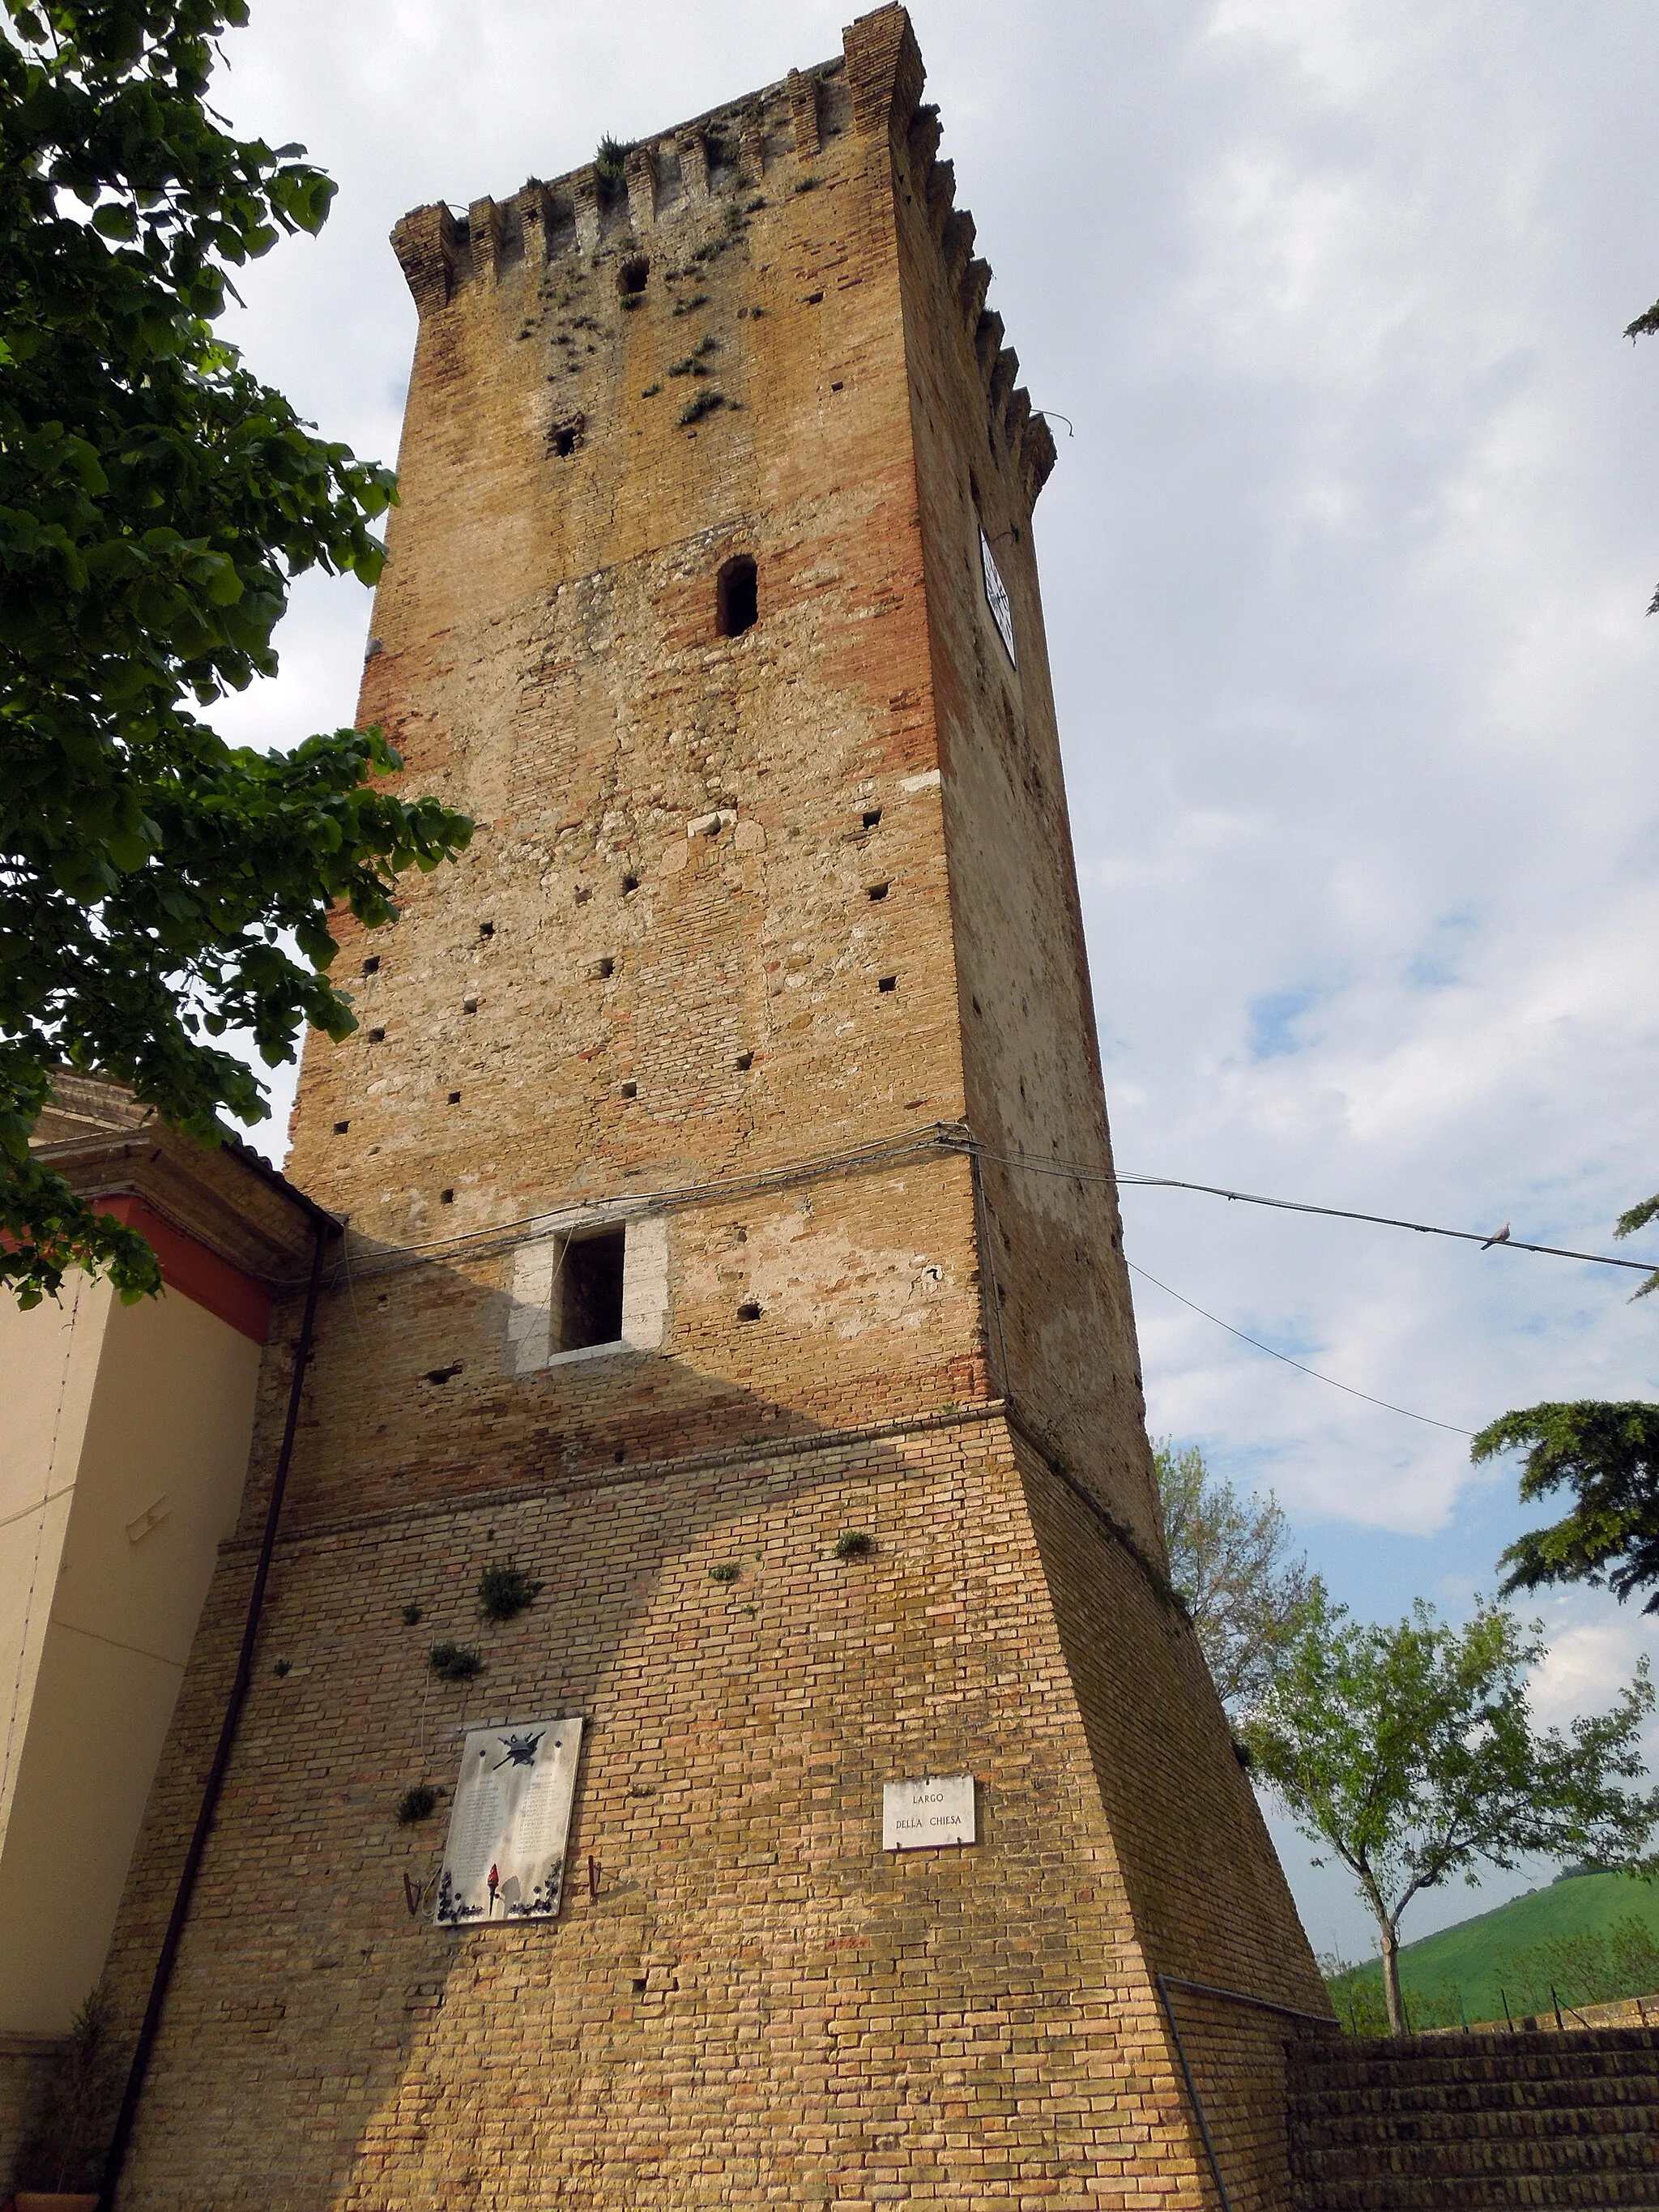 Photo showing: Torre a base quadrangolare in pietra e laterizi del paese di Ripattoni in provincia di Teramo.